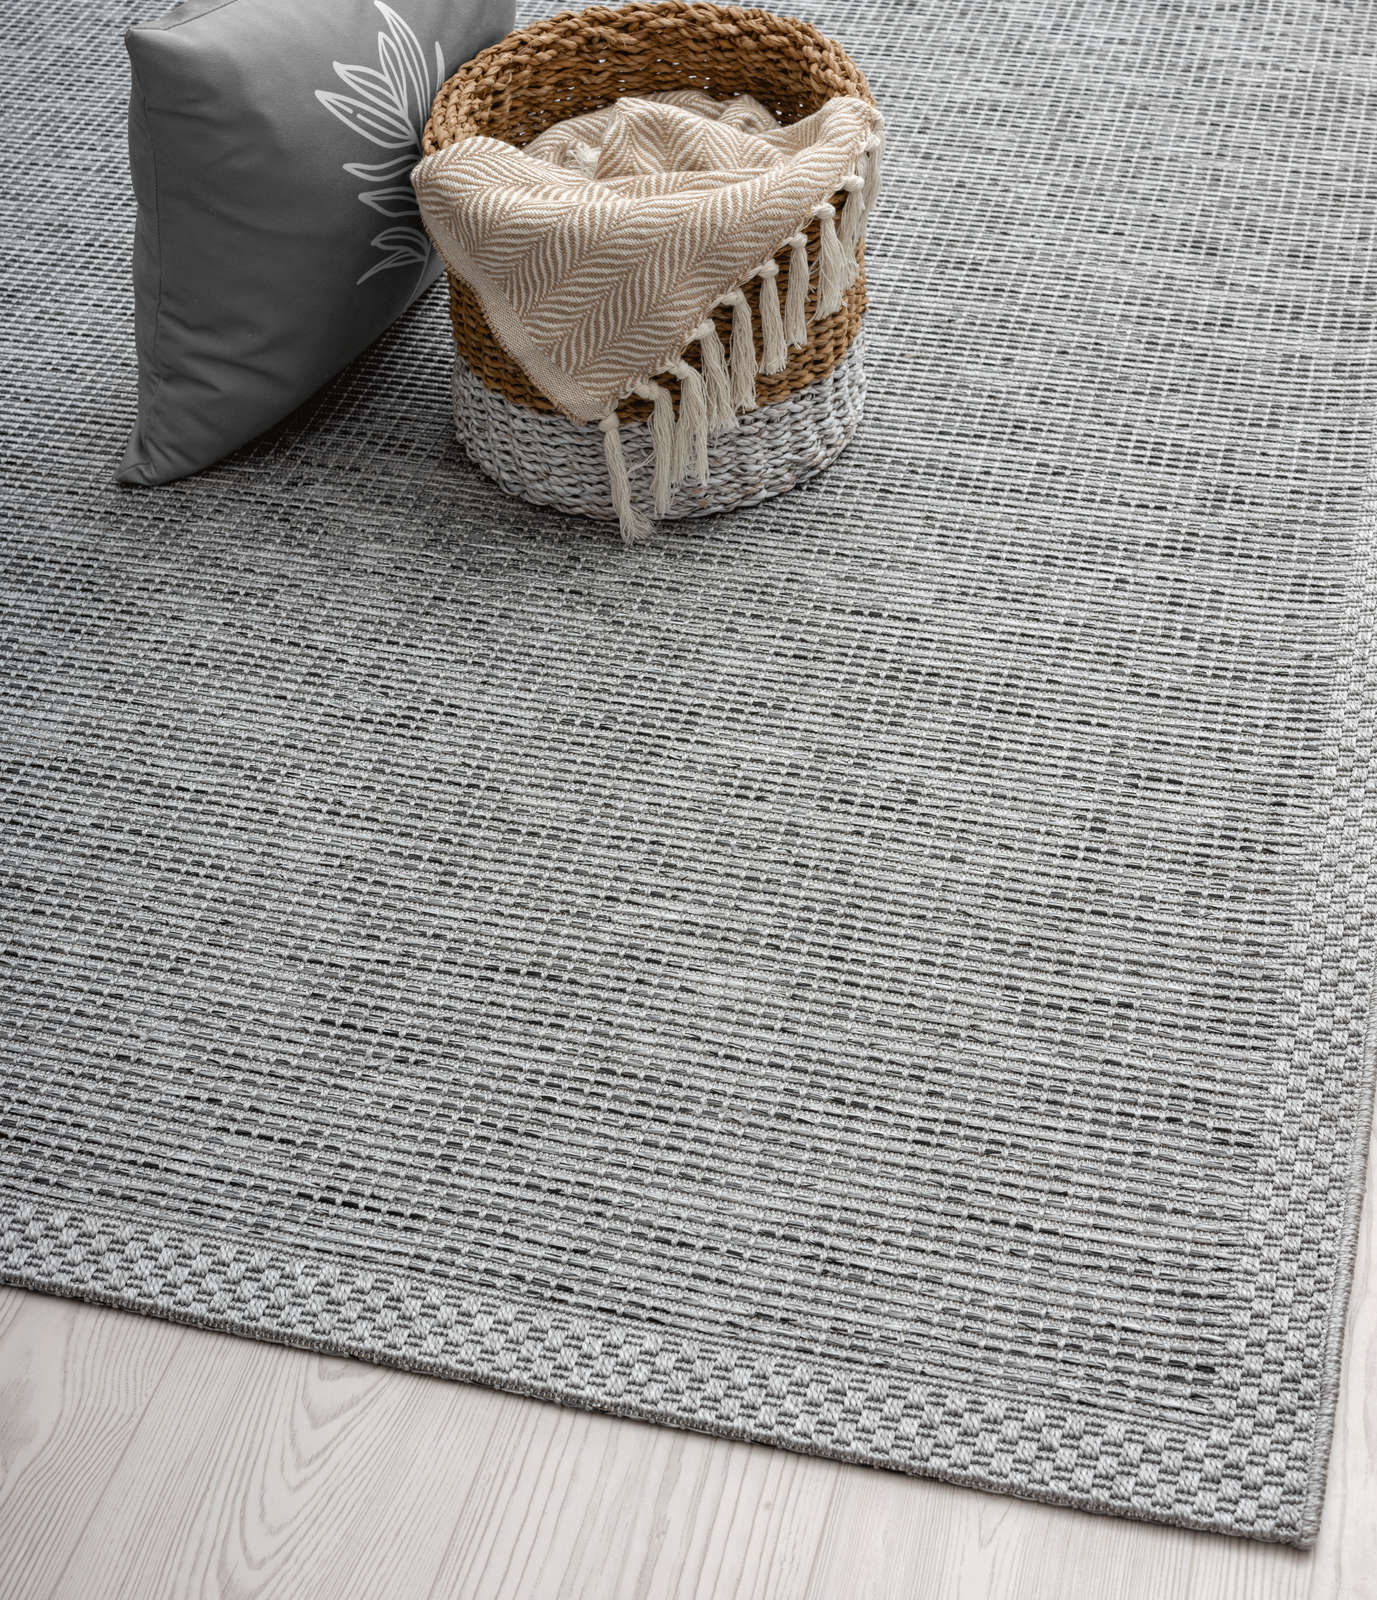             Schlichter Outdoor Teppich in Grau – 200 x 140 cm
        